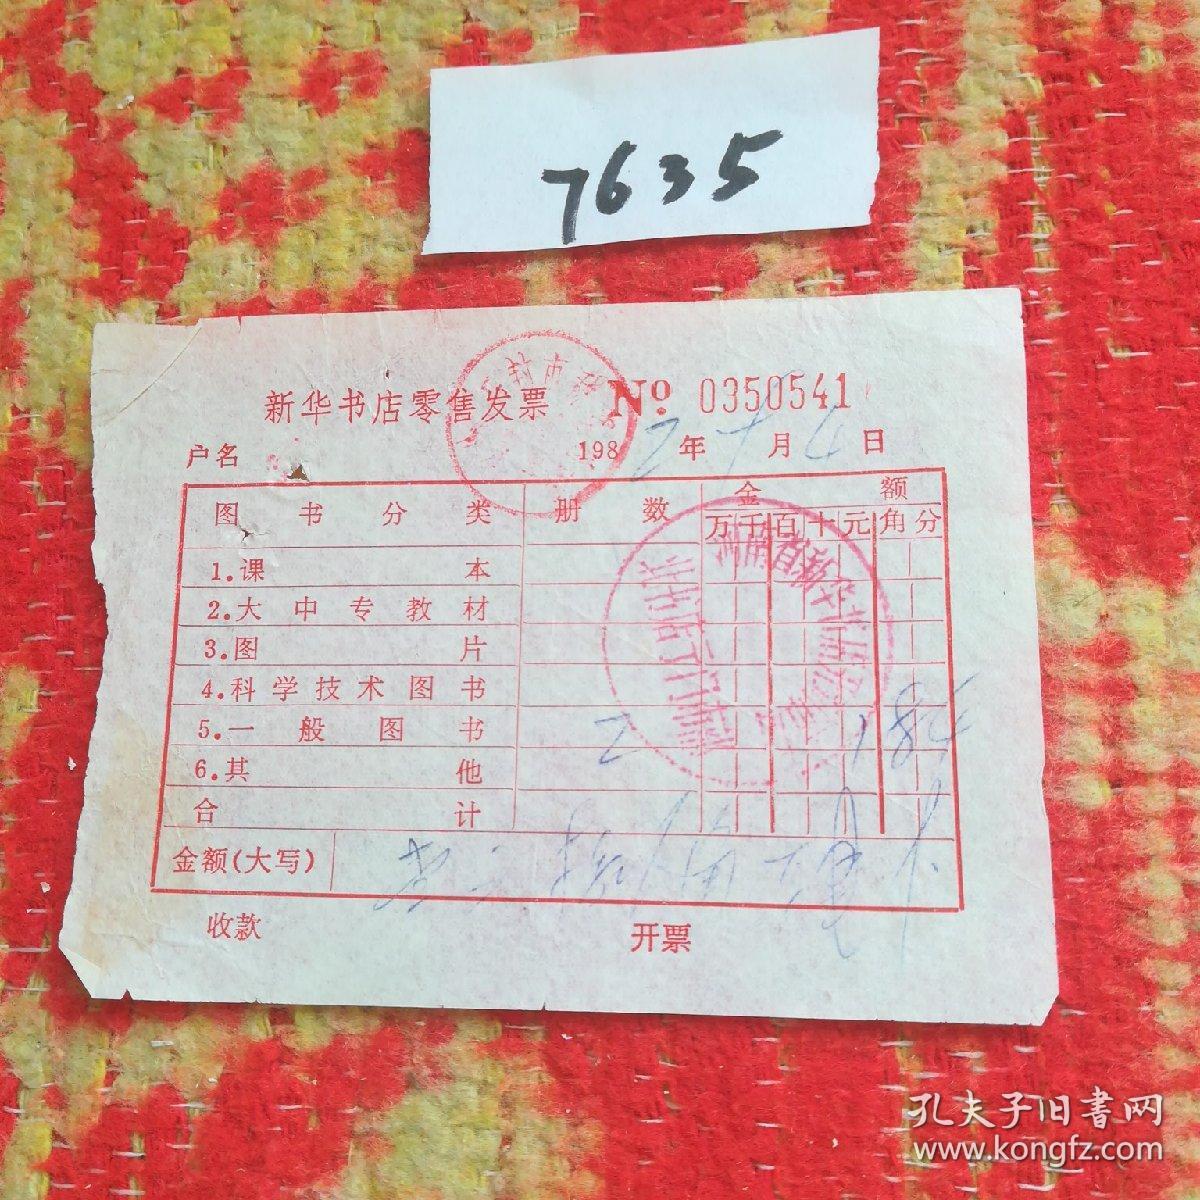 历史文献1982年盖有河南省新华书店开封市店北书店亍门市部印章的发票一张